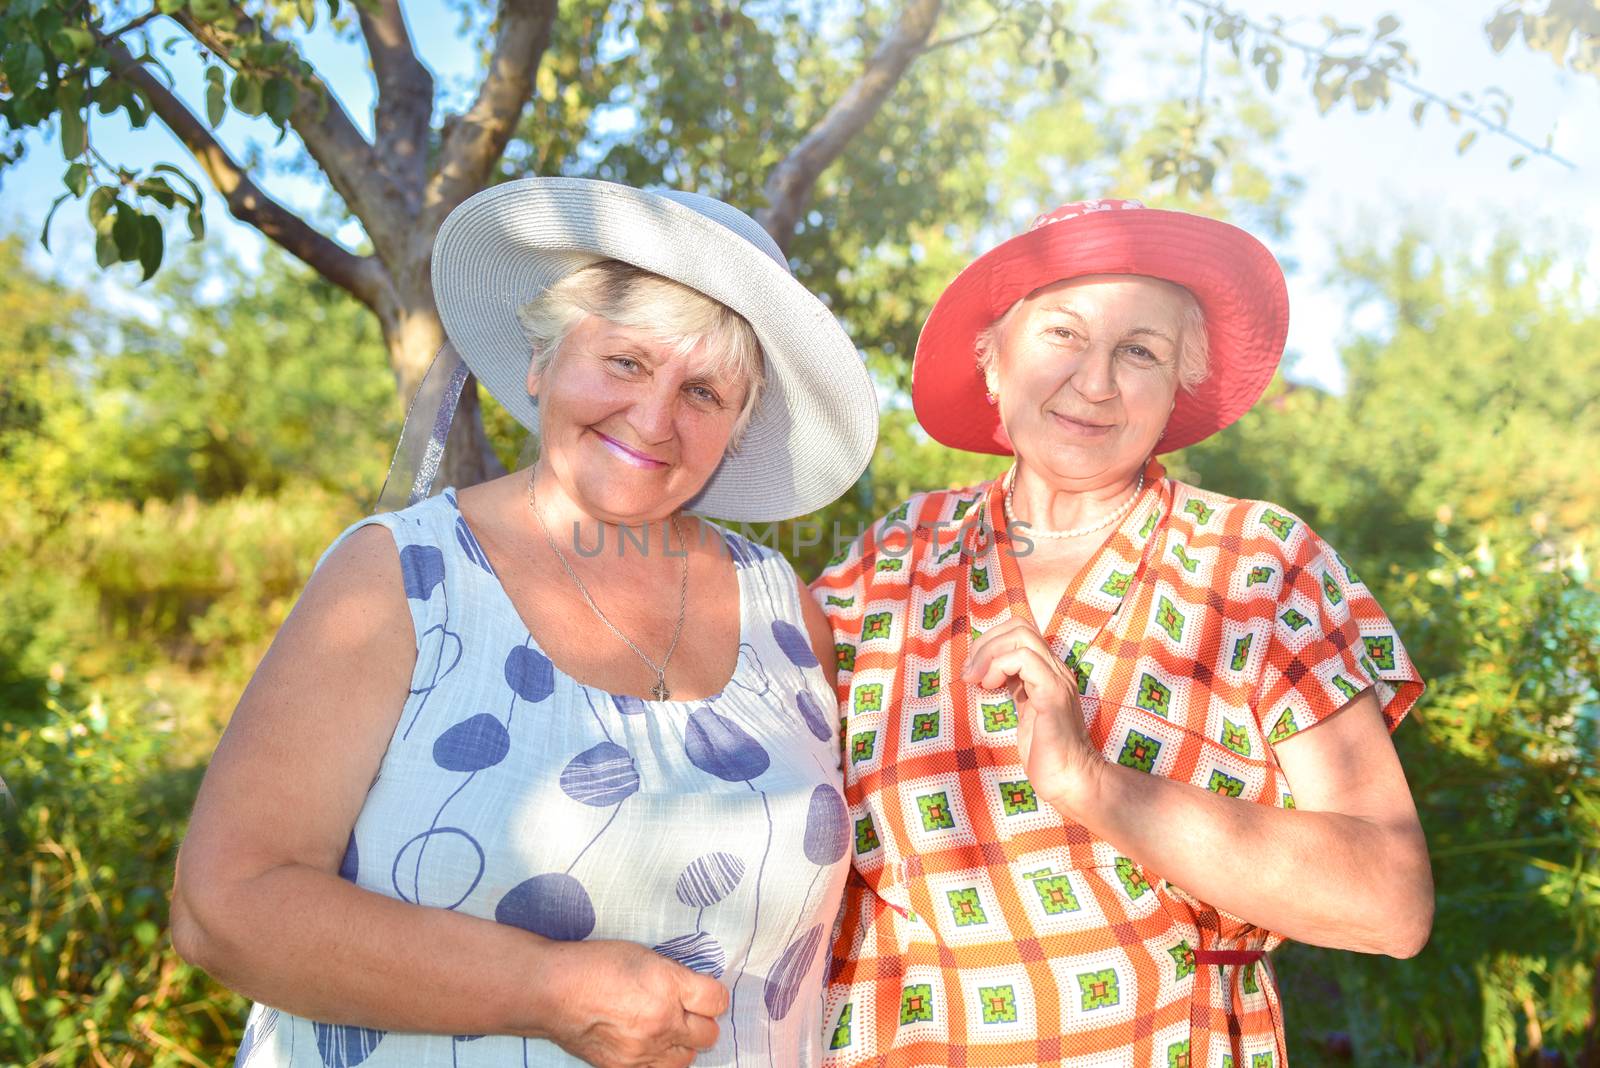 Walk in the garden. Two retired women best friends in hats walk happily in the garden. by Nickstock